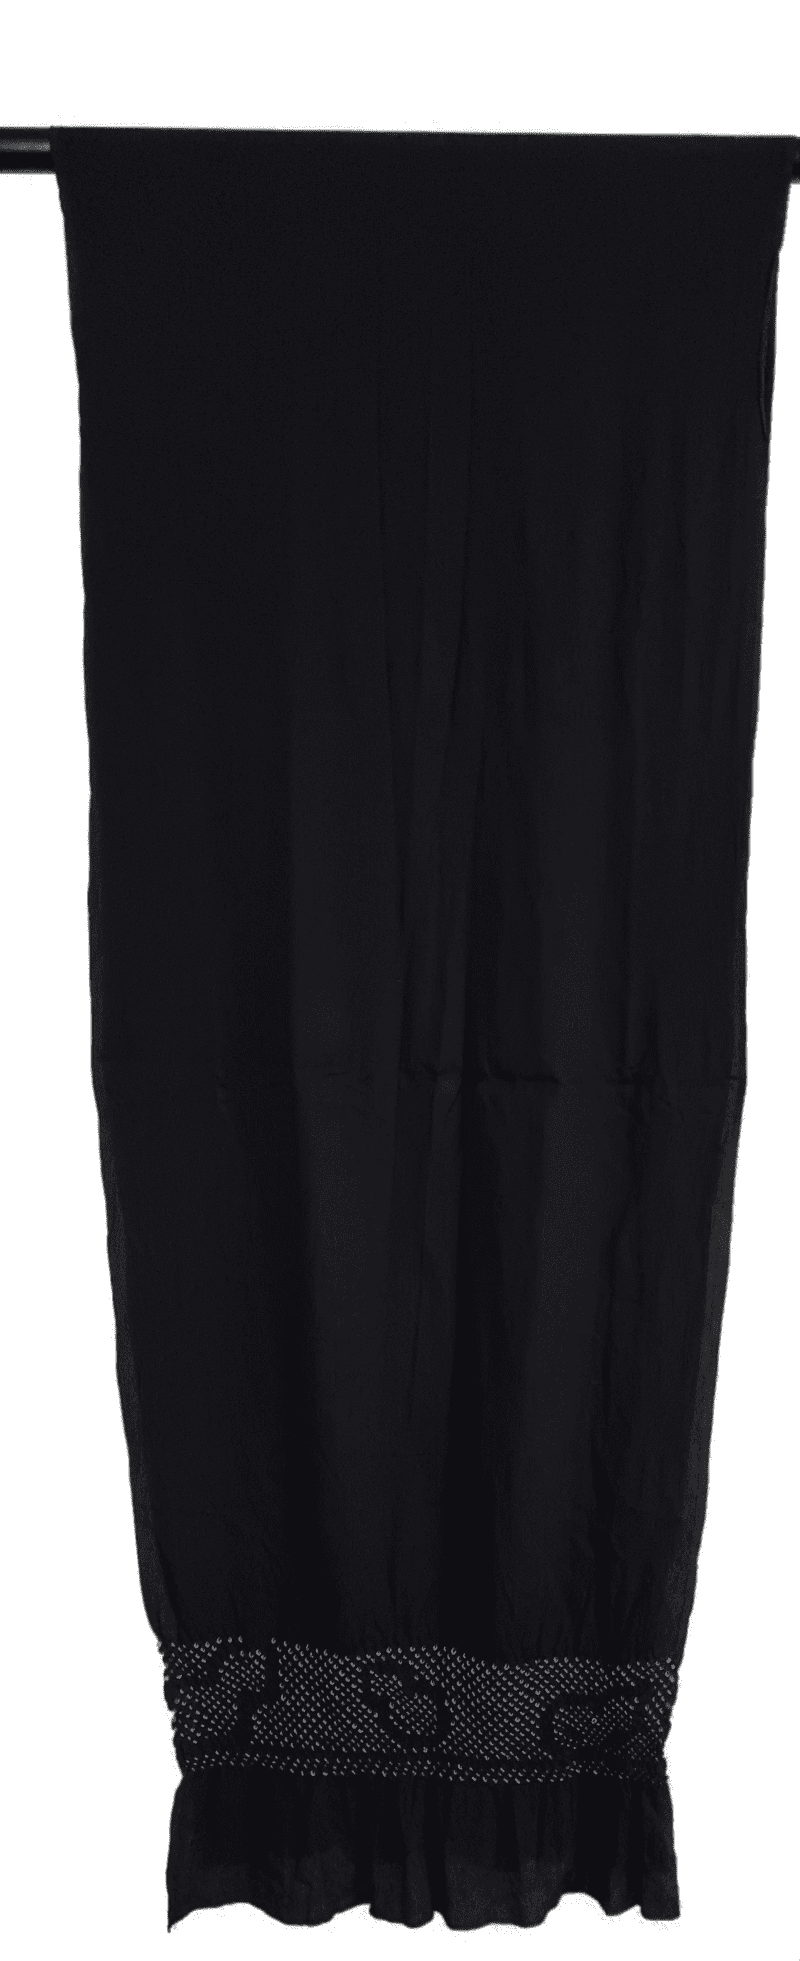 Heko Obi in schwarz mit Flaschenkürbis Details